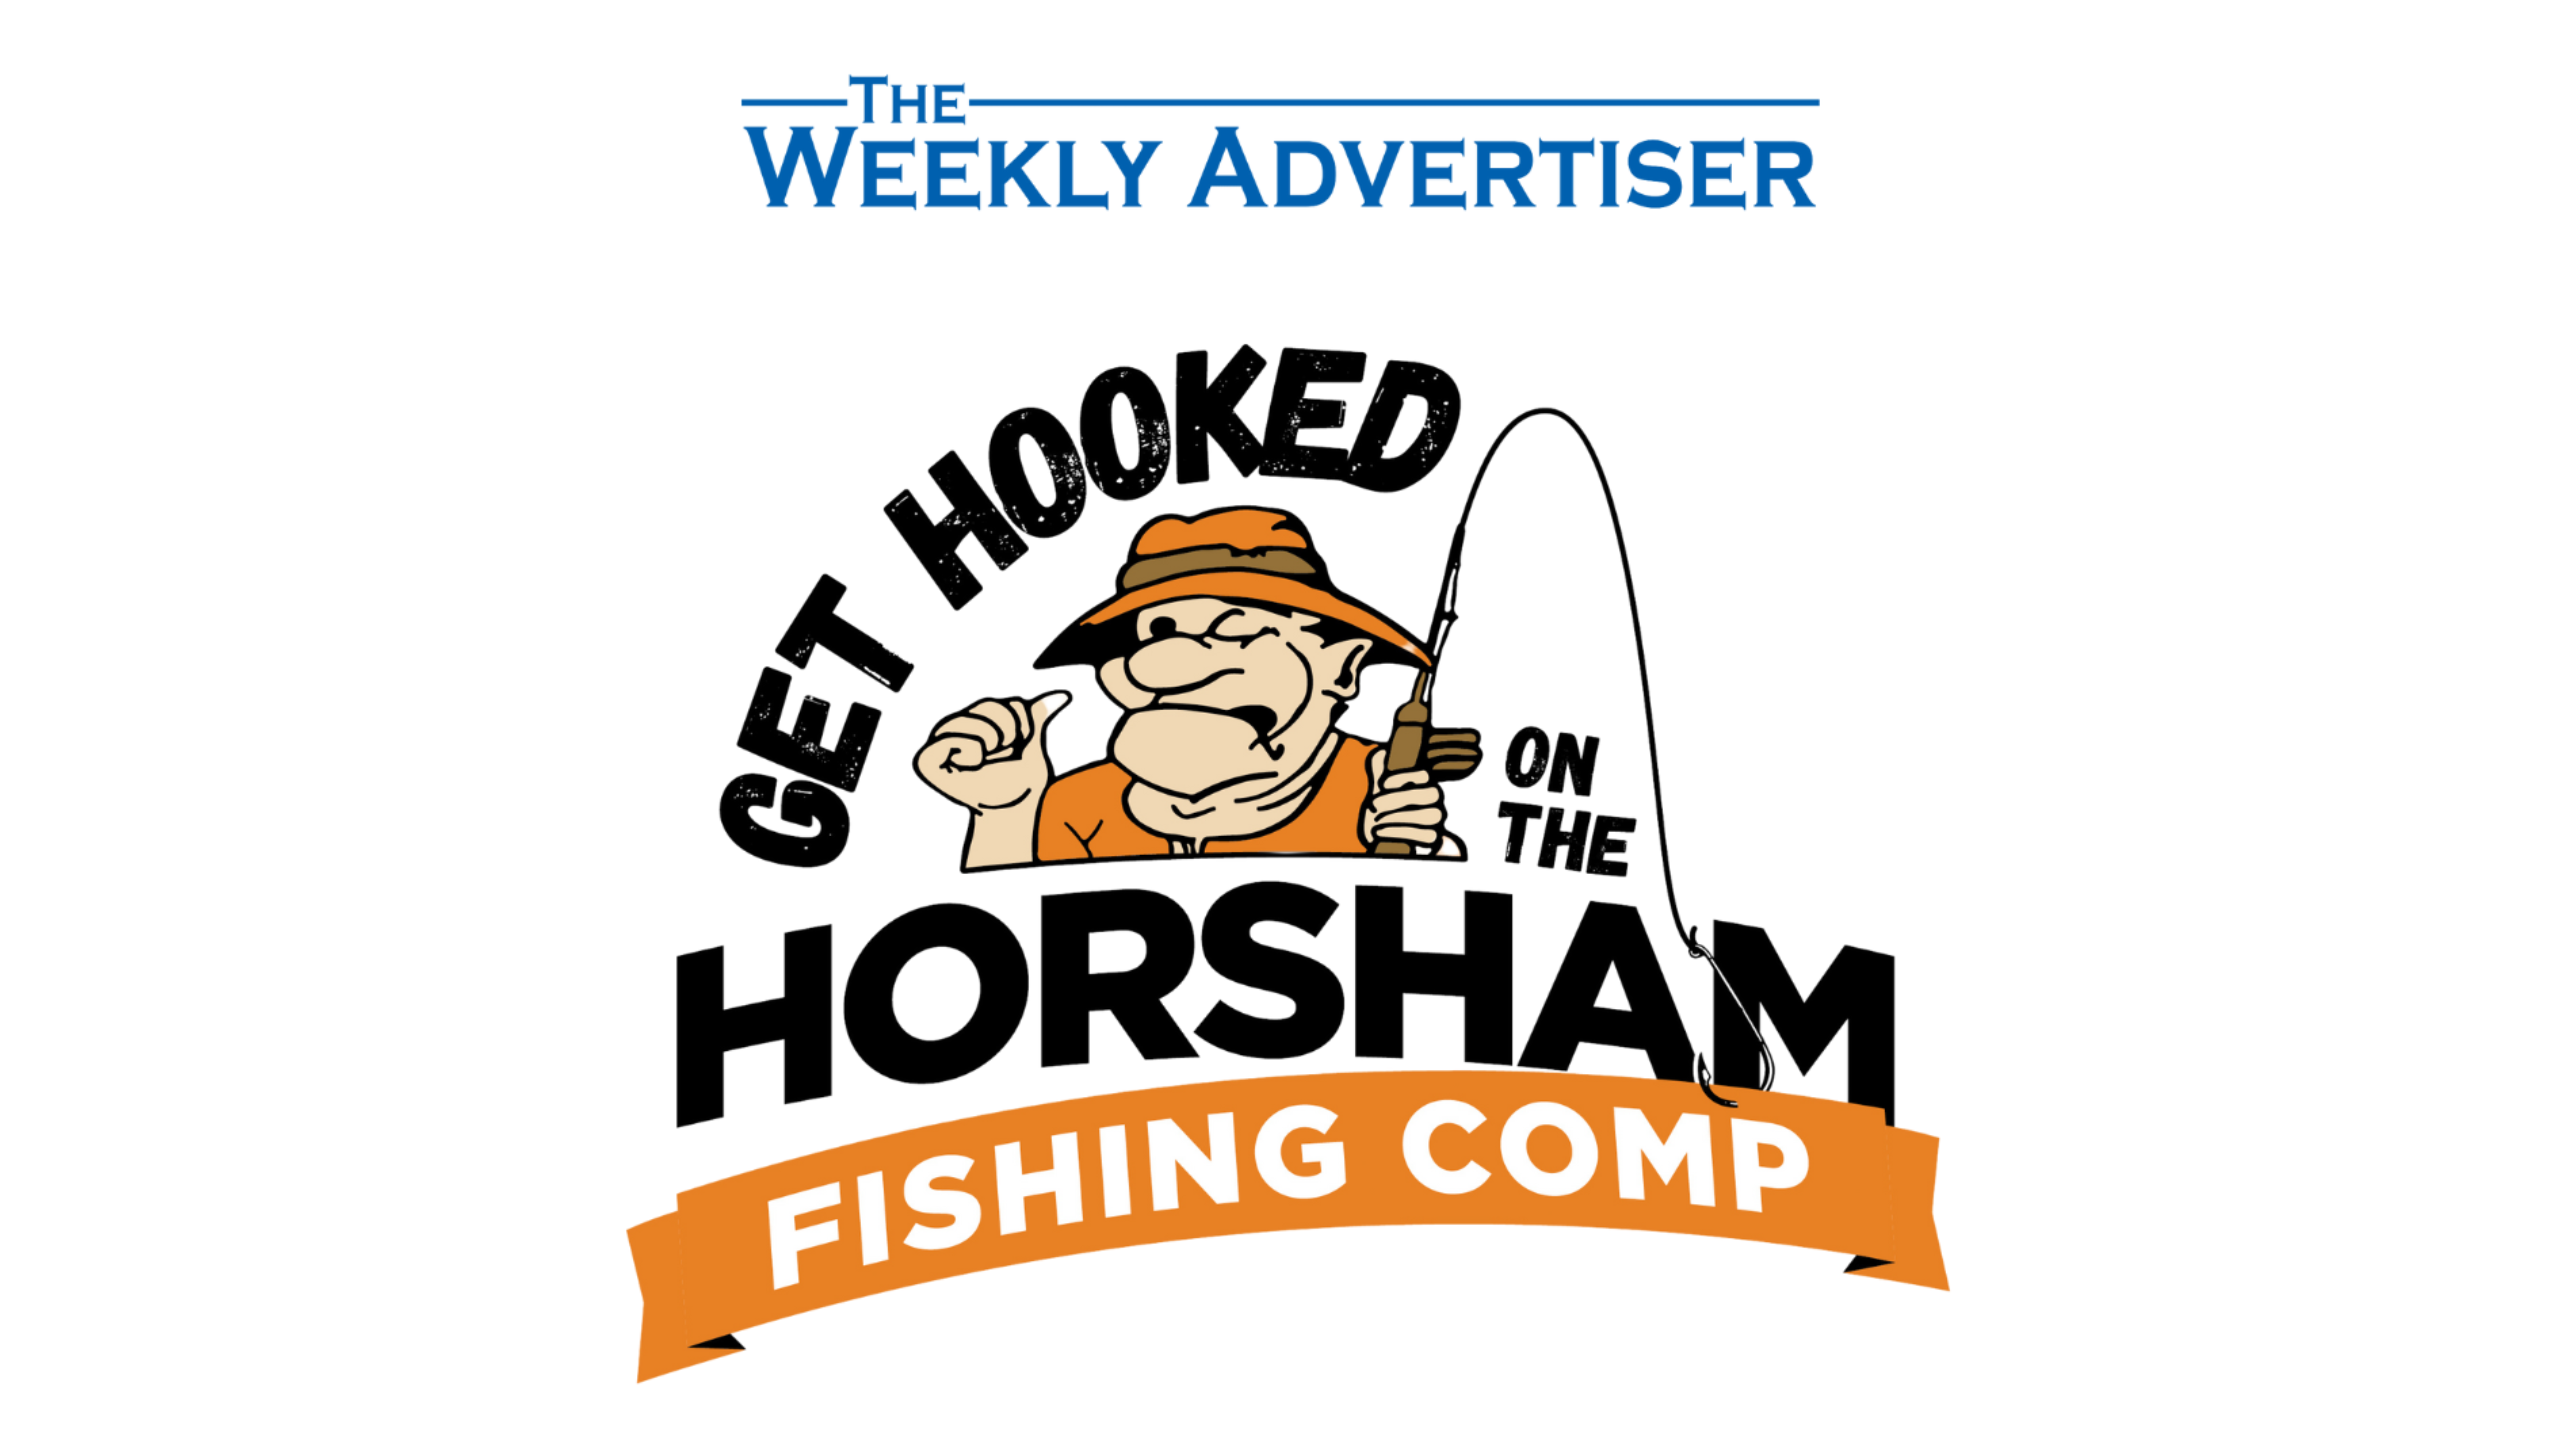 Horsham Fishing Comp logo